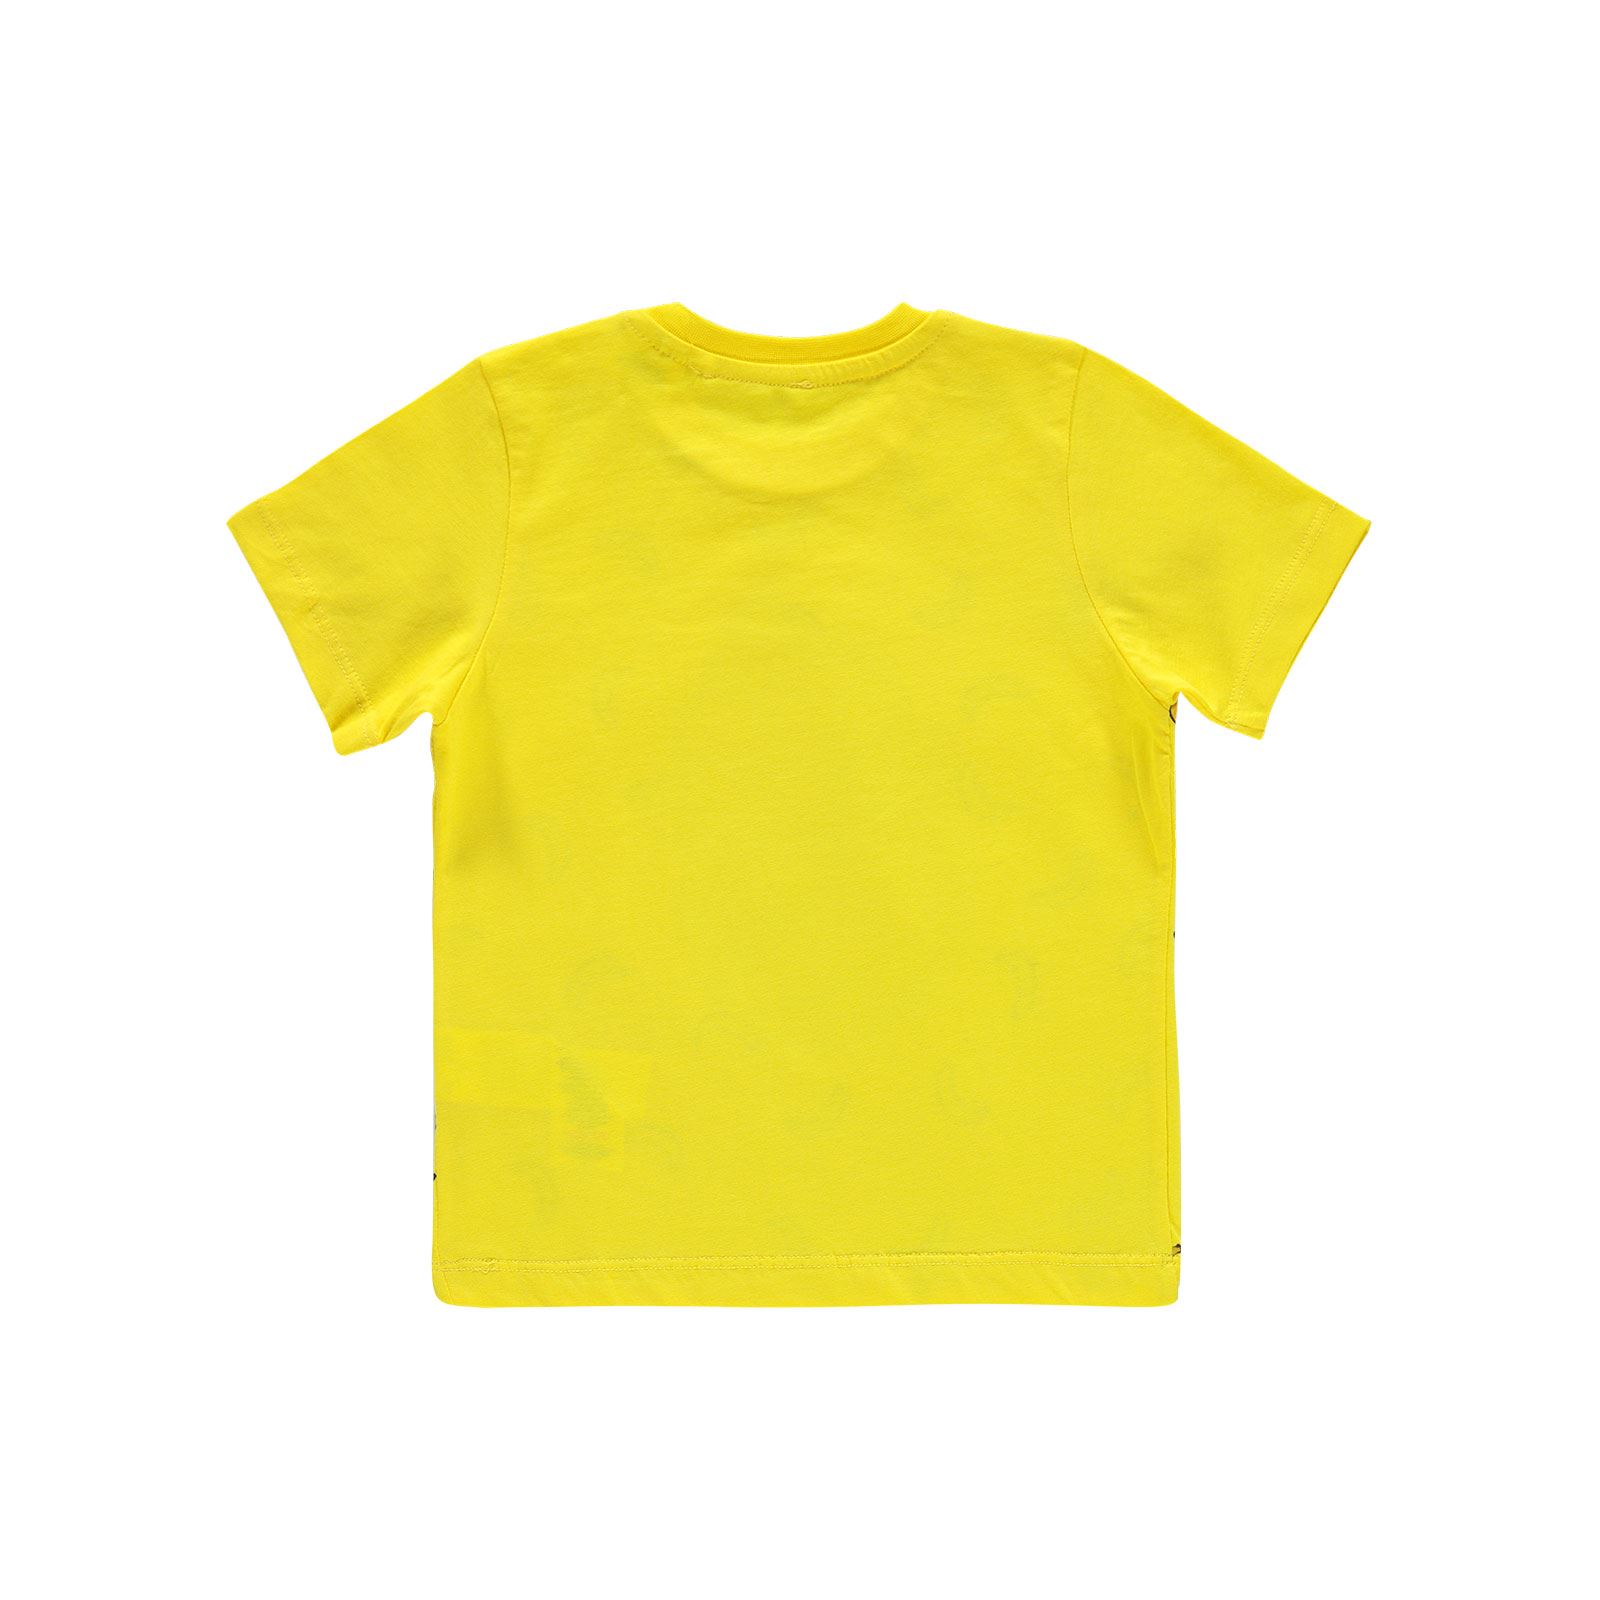 Kukuli Erkek Çocuk Tişört 2-5 Yaş Sarı